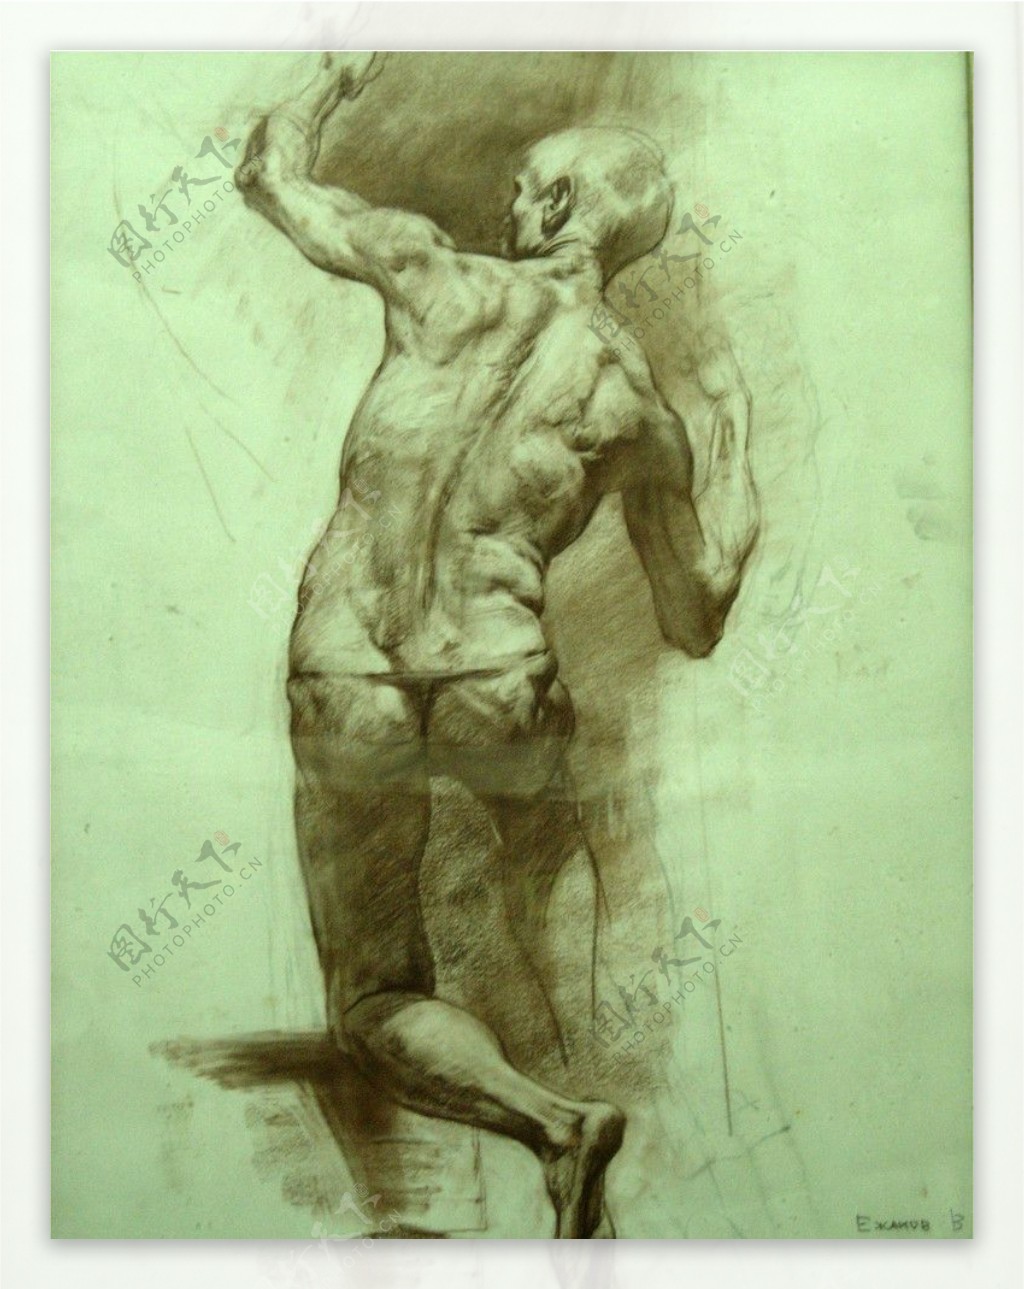 俄罗斯美术素描作品男人体背部像图片